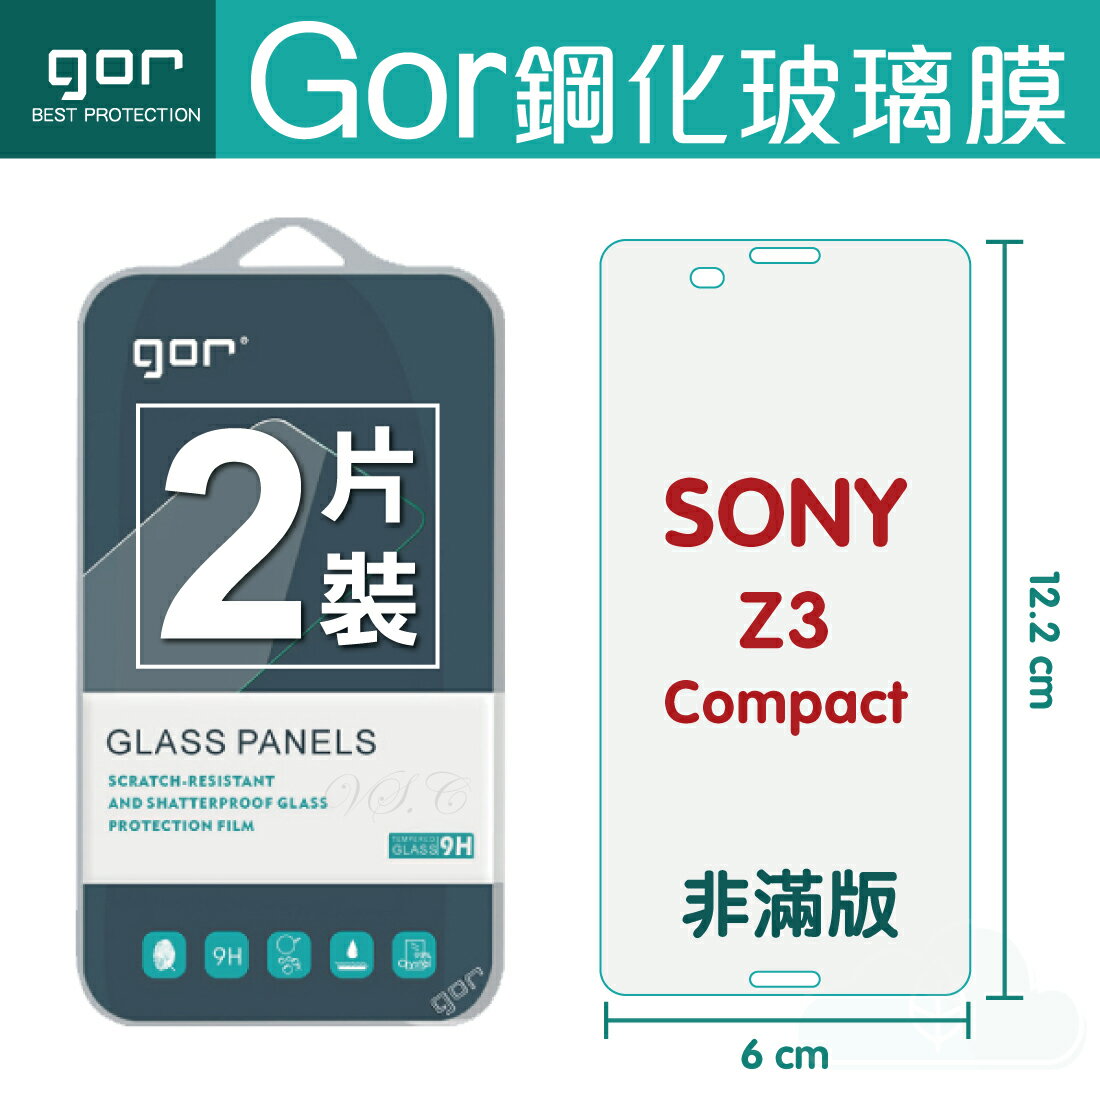 【SONY】GOR 9H Xperia Z3 Compact 鋼化 玻璃 保護貼 全透明非滿版 兩片裝【全館滿299免運費】